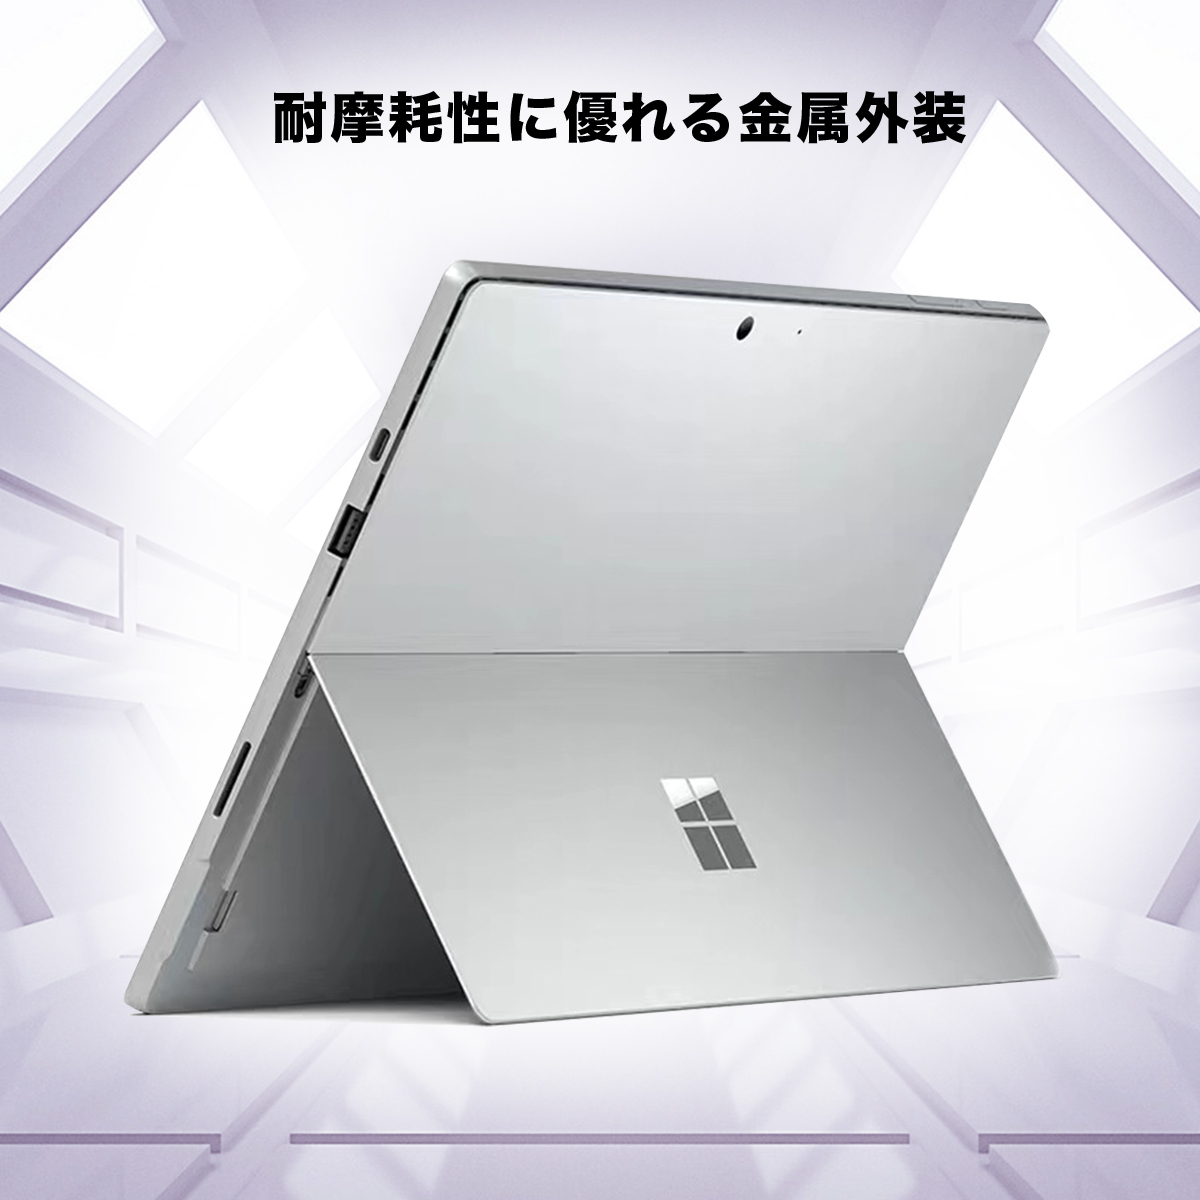 Win11搭載 Surface pro4 中古タブレット PCサーフェスノートパソコン12.3型液晶タブレットPC Corei5  6300Uメモリ4GB 新品SSD128GB Windows11ノートパソコン